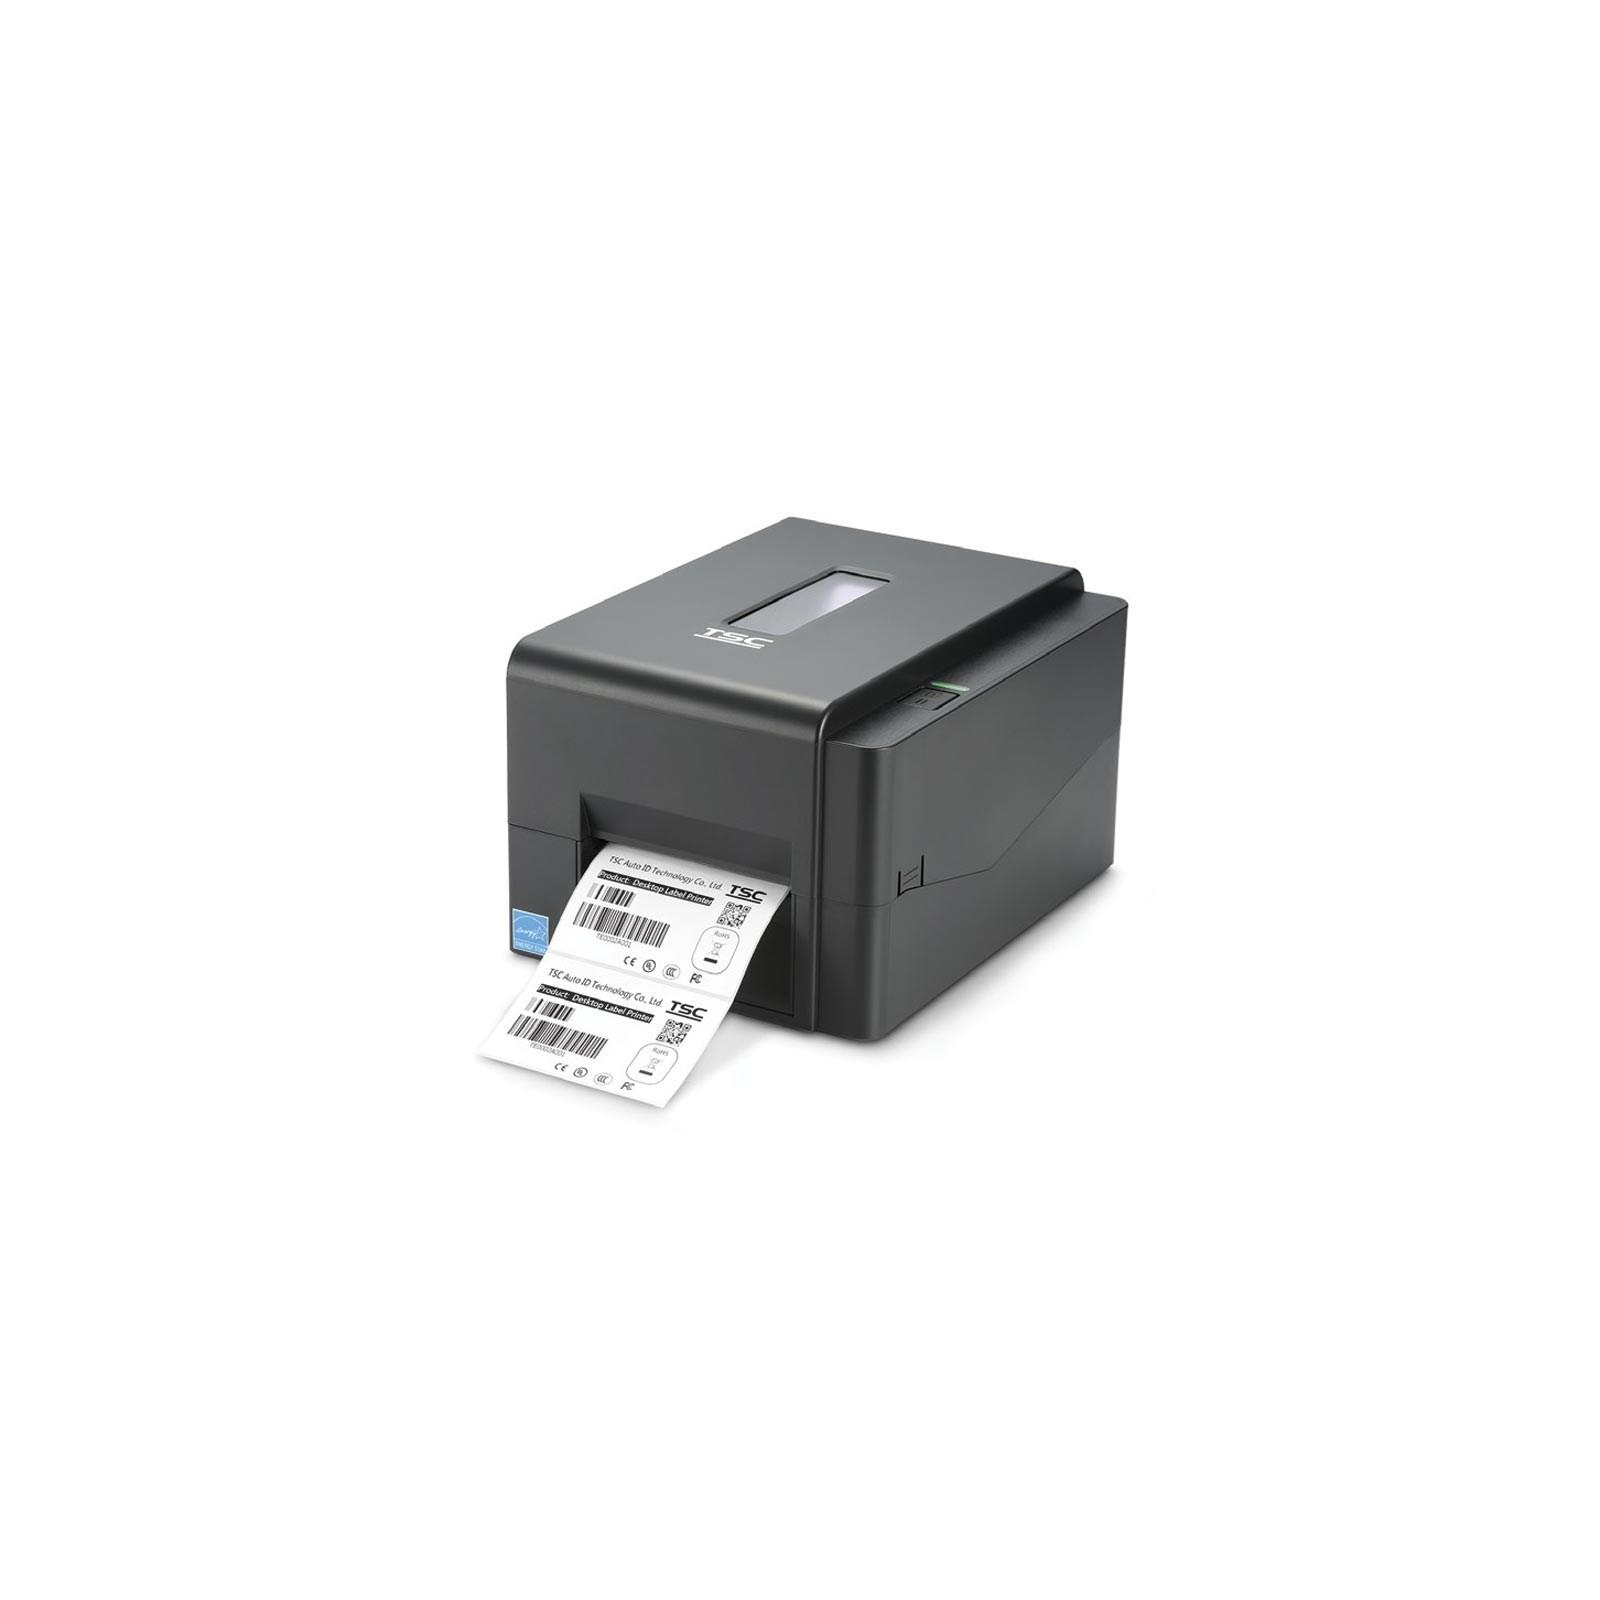 Принтер етикеток TSC TE300 (99-065A701-00LF00)